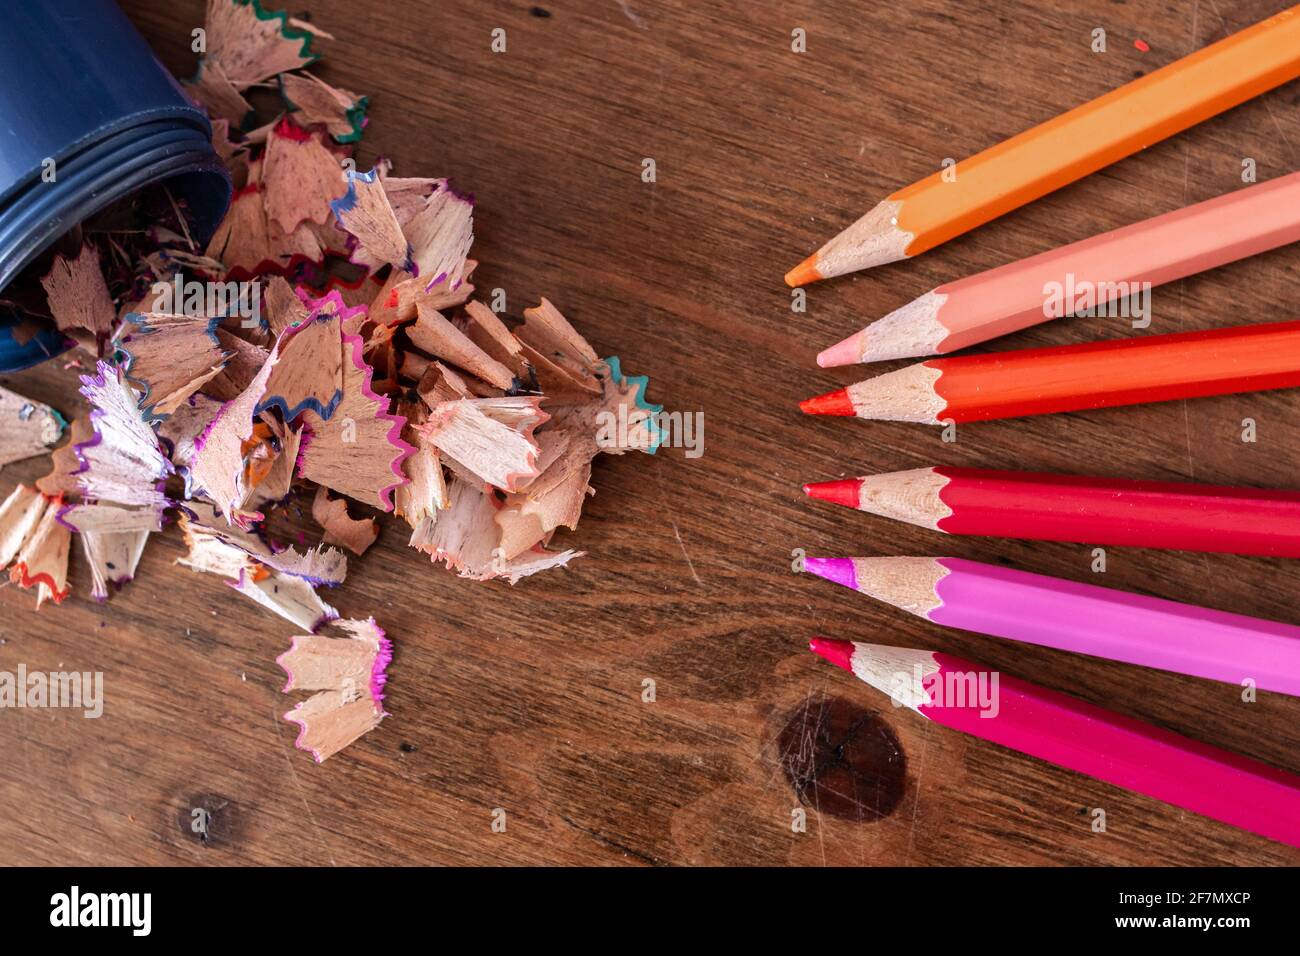 Des copeaux de crayon se répandent dans un taille-crayon bleu sans couvercle sur un bureau en bois dur, violet, orange, rose, jaune, crayons alignés. Banque D'Images